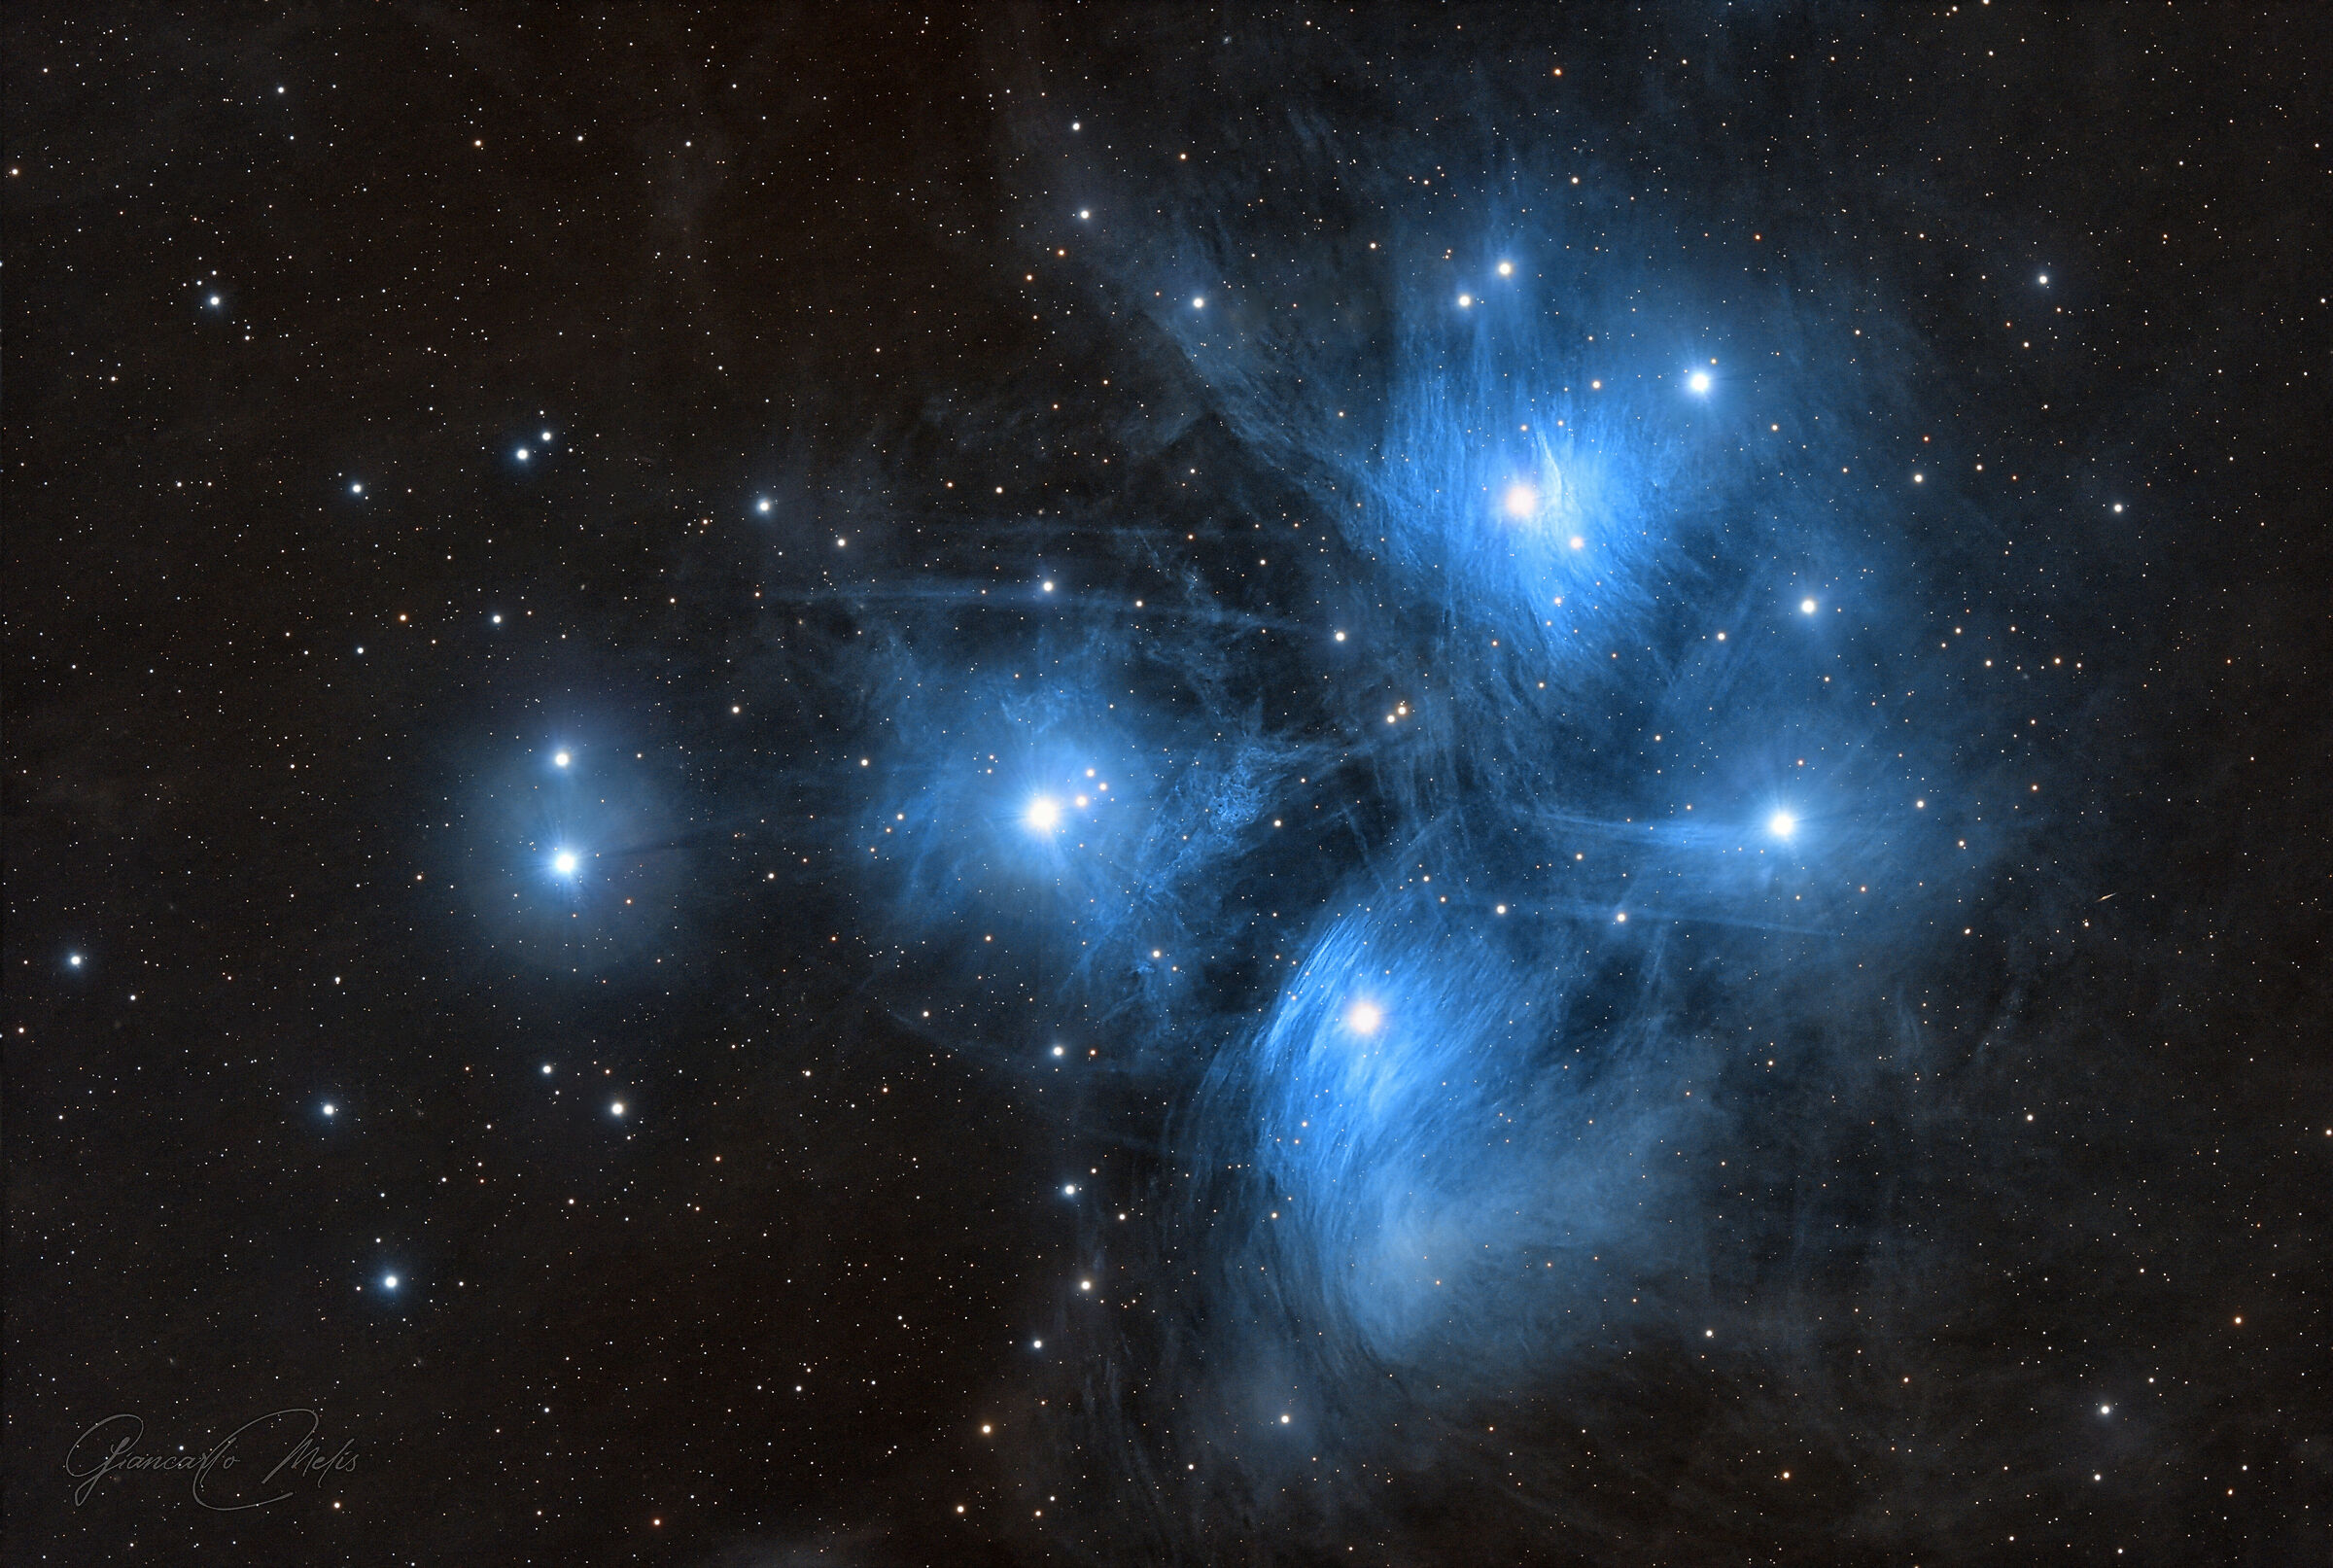 Pleiades - M45...